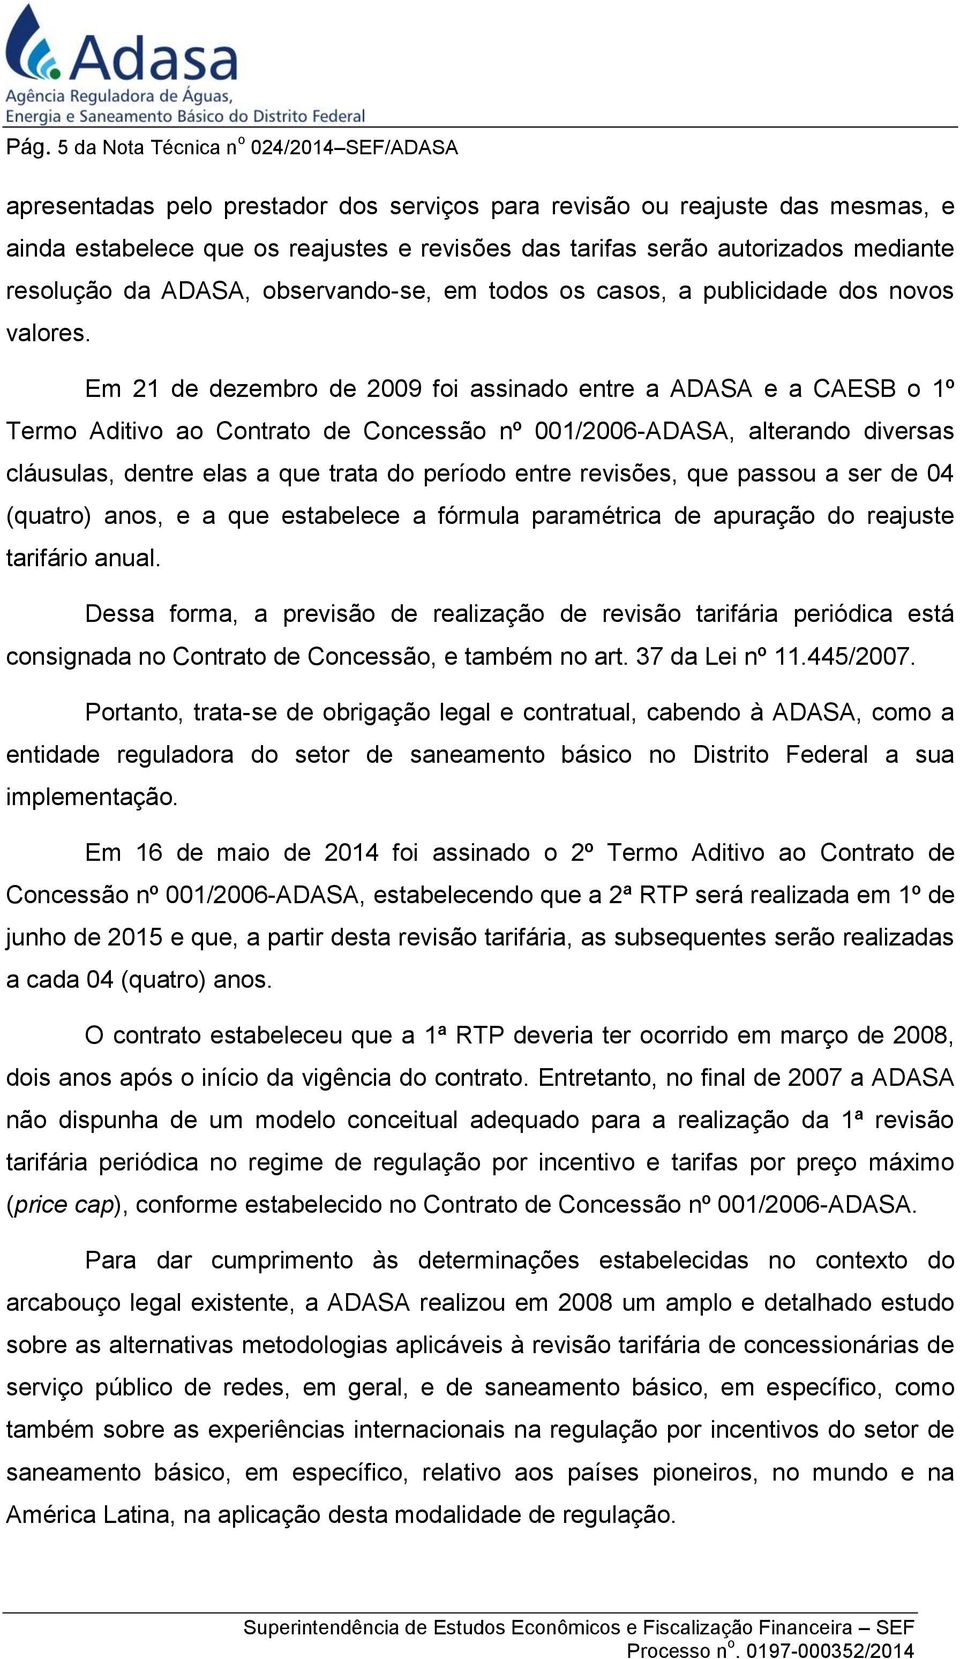 Em 21 de dezembro de 2009 foi assinado entre a ADASA e a CAESB o 1º Termo Aditivo ao Contrato de Concessão nº 001/2006-ADASA, alterando diversas cláusulas, dentre elas a que trata do período entre